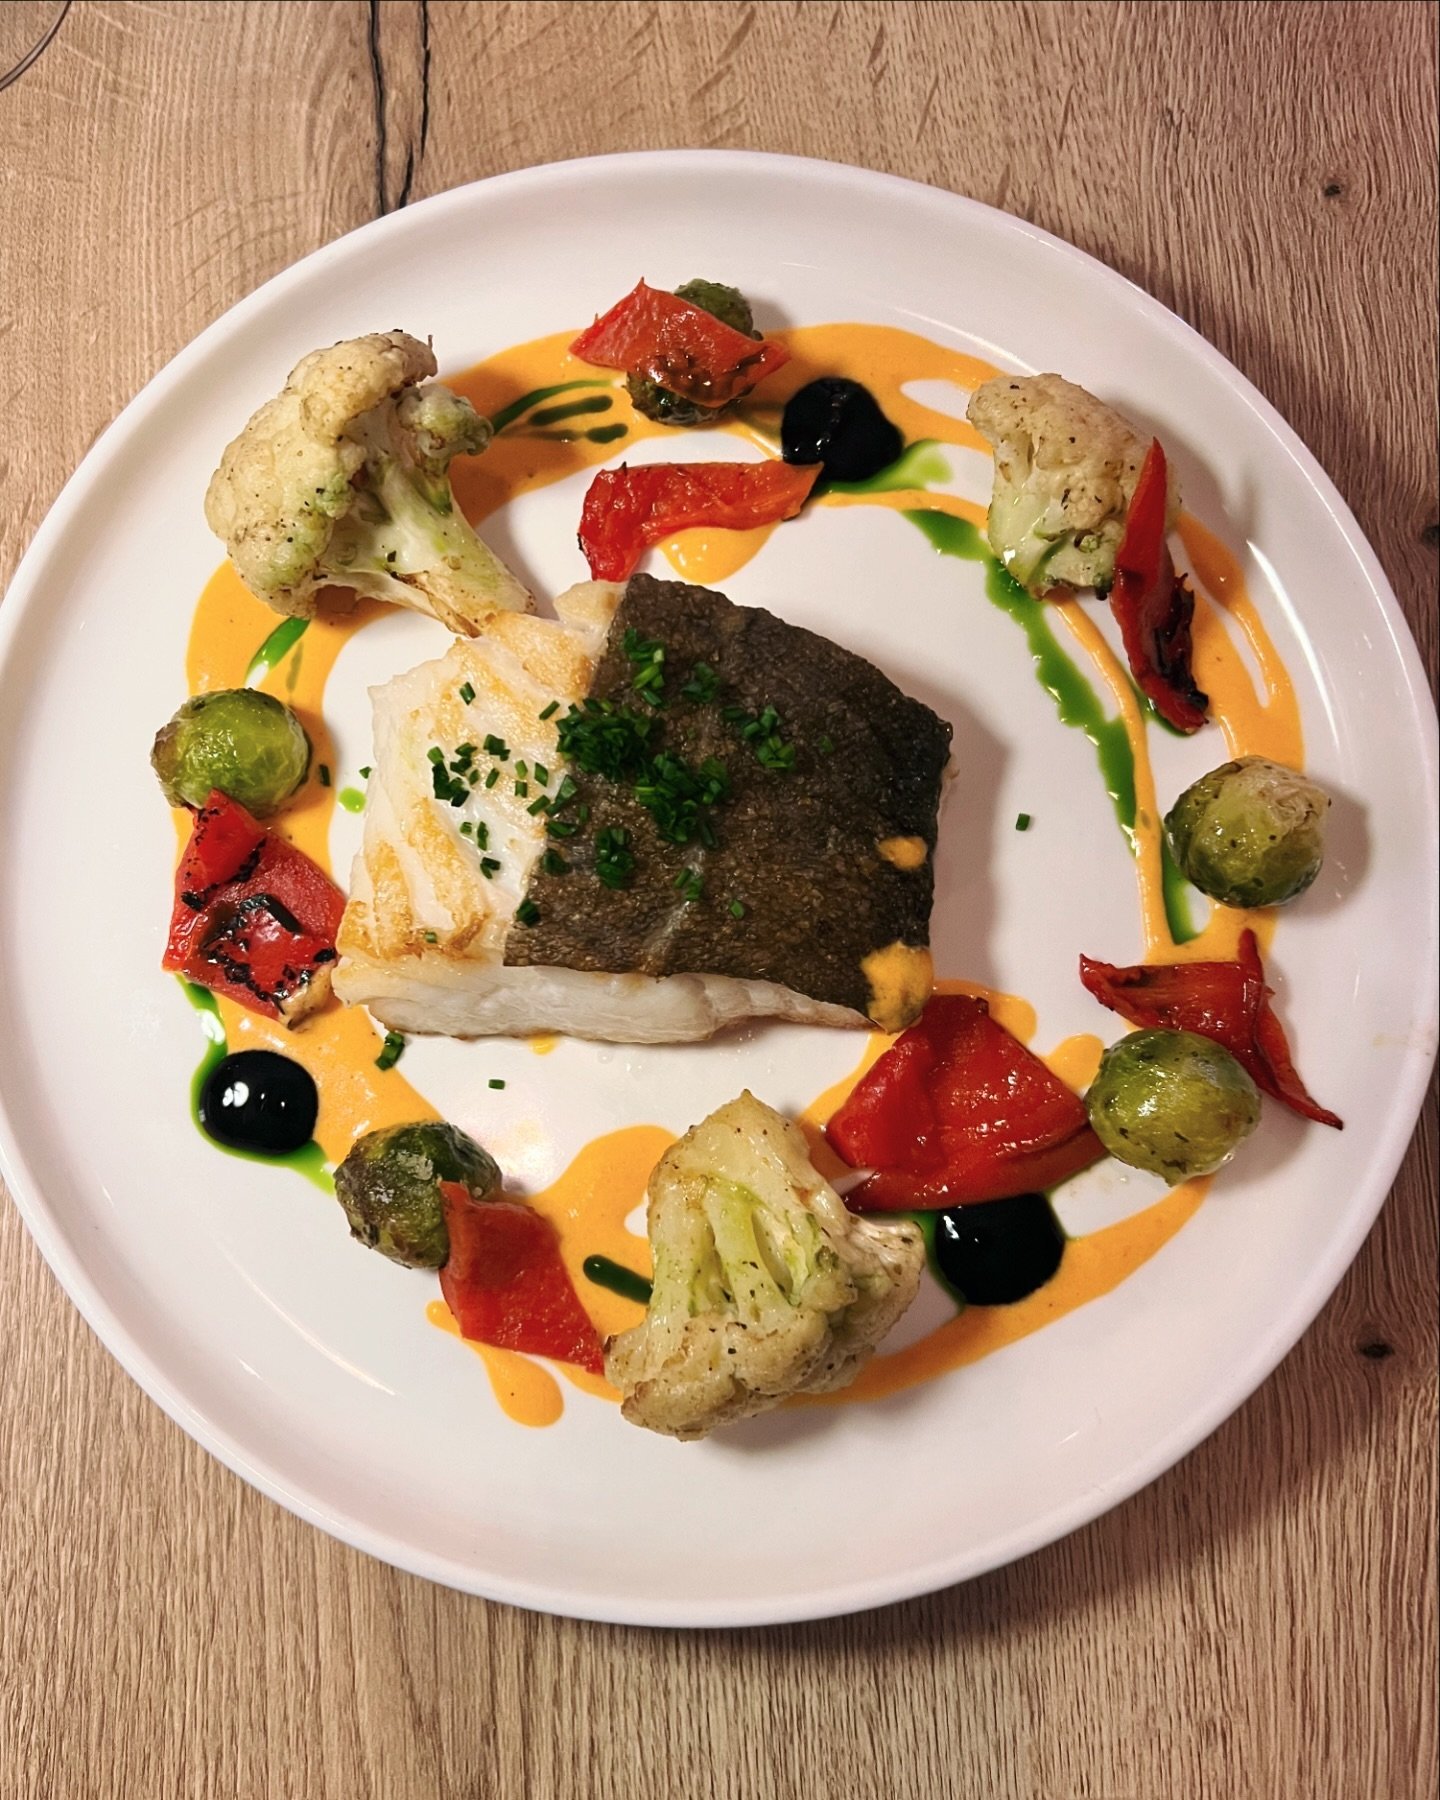 V I S @restaurantenya .
Wisten jullie dat wij bij Enya heerlijke visgerechten serveren?
Modern Grieks met een Mediterrane twist.
#moderngreekfood #seafood #aegeansea #ionionsea #mediterranean #foodforlife #bluezones #restaurantenya